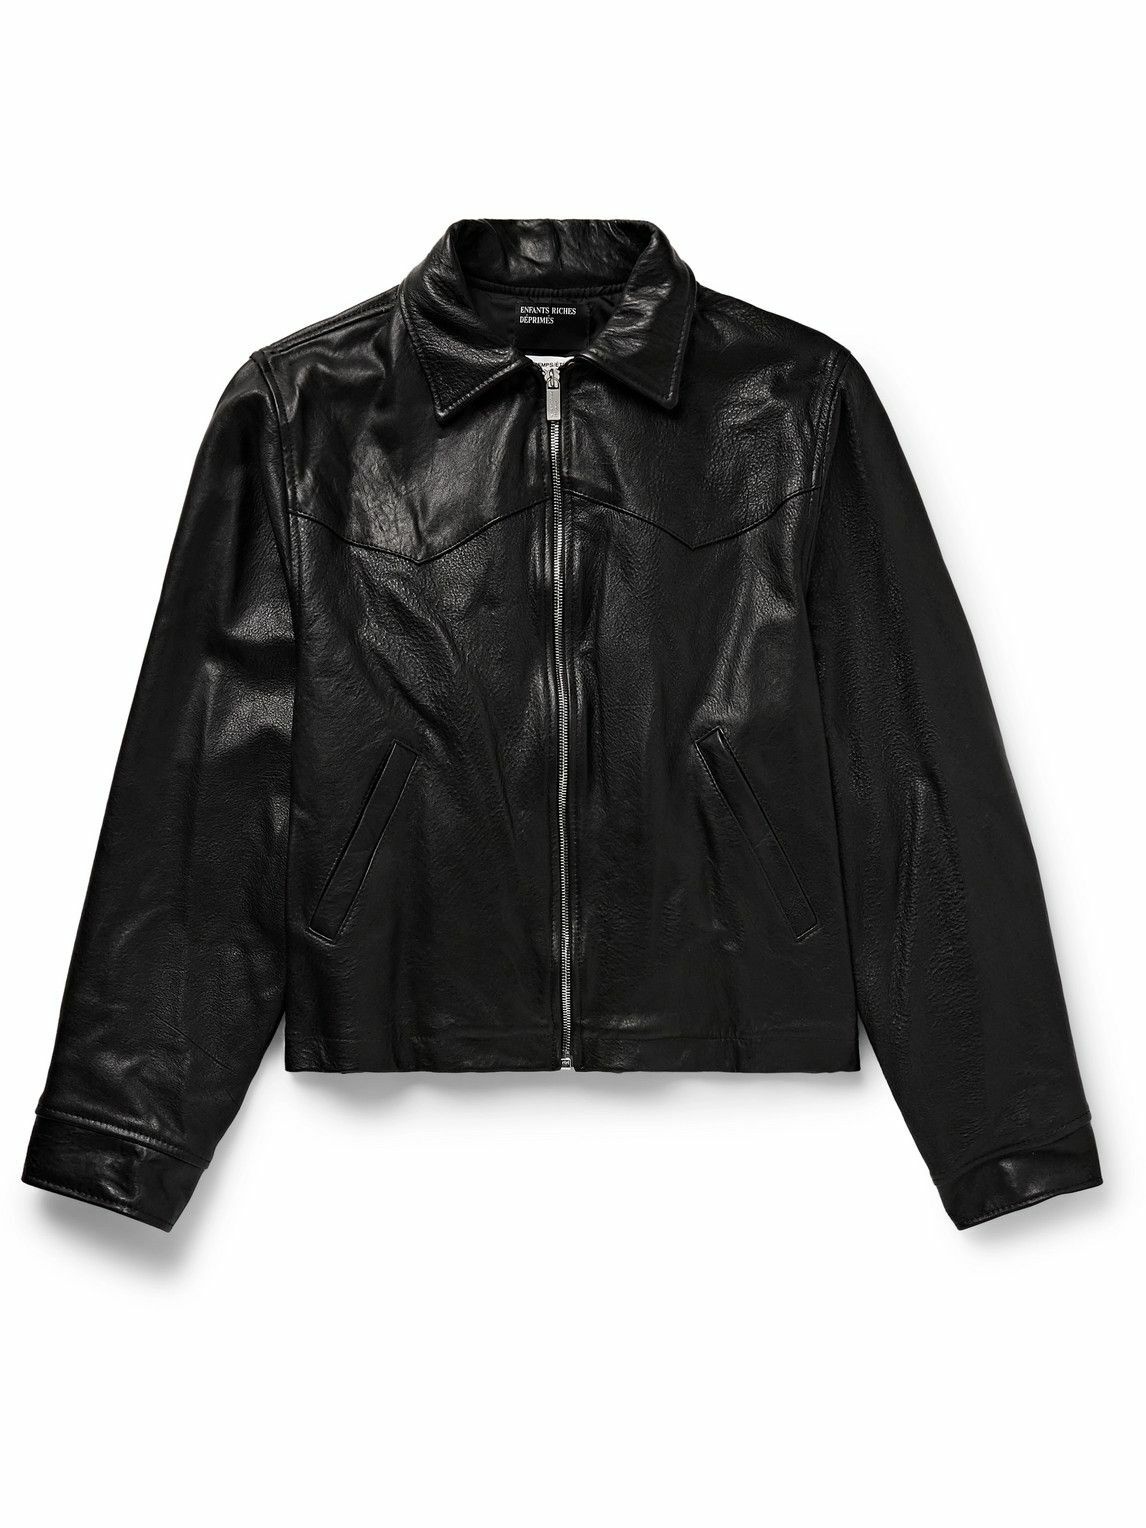 Photo: Enfants Riches Déprimés - Washed-Leather Jacket - Black